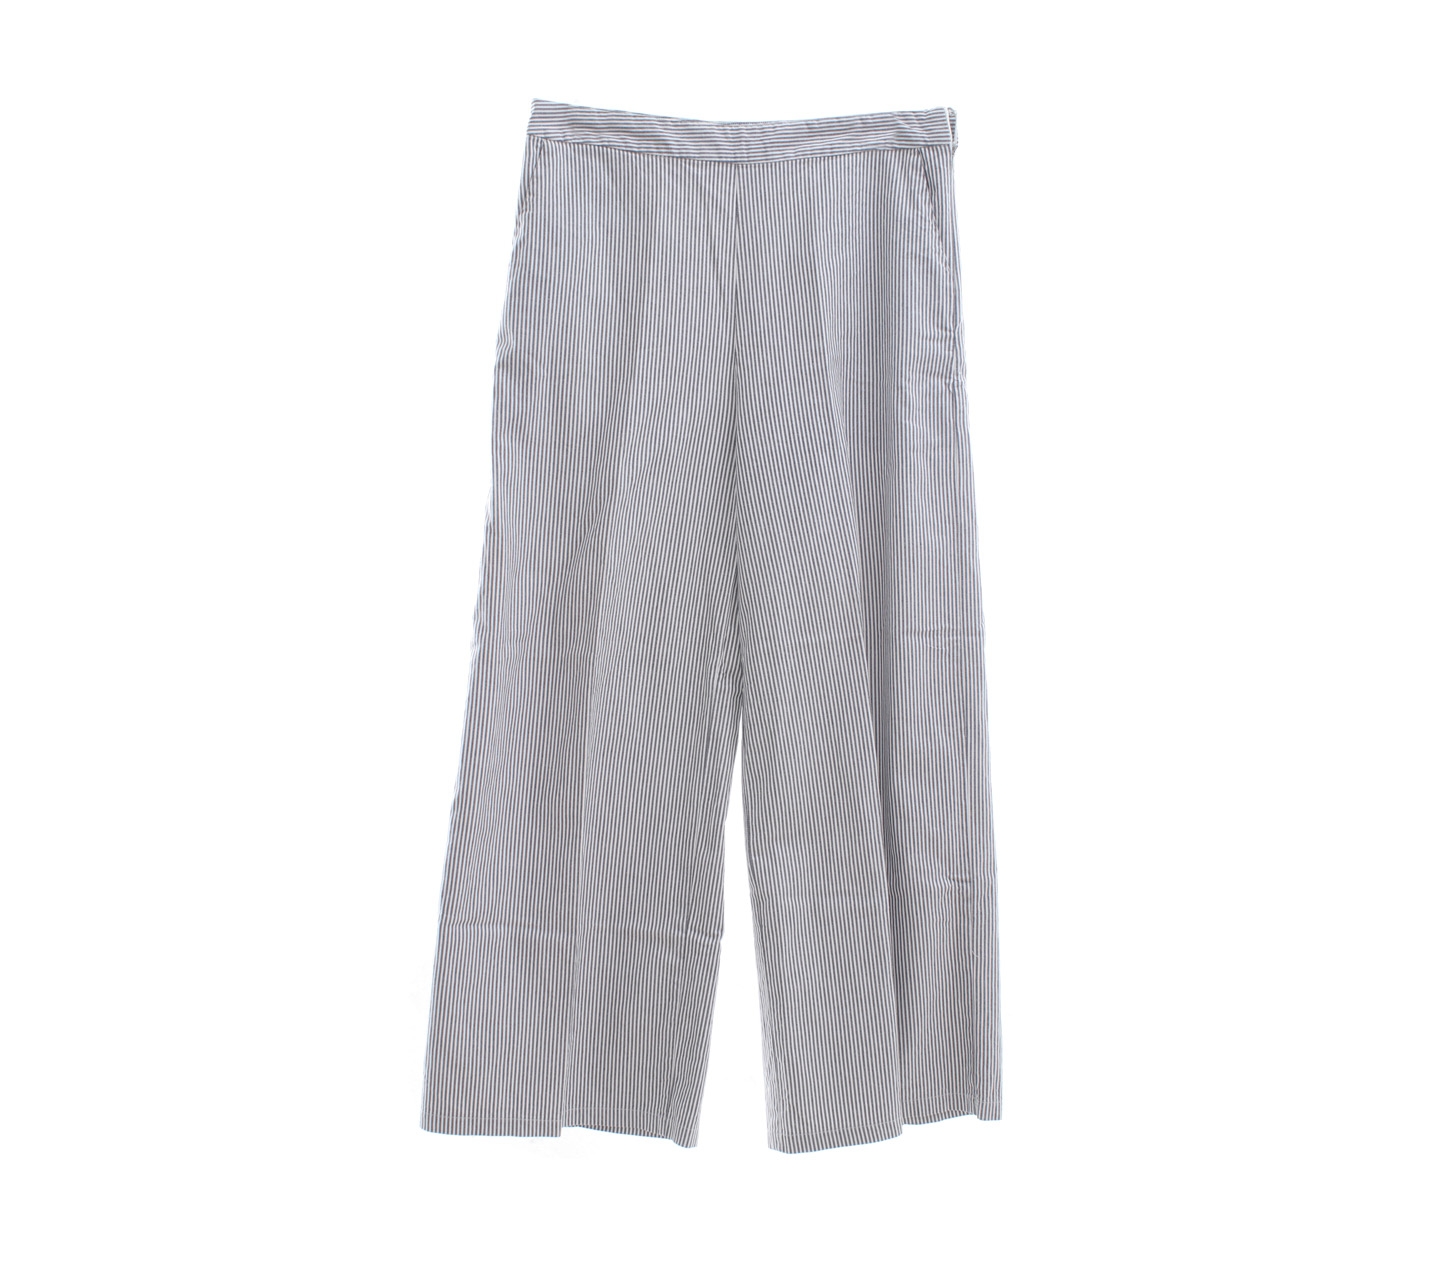 Cotton ink Grey & White Striped Long Pants